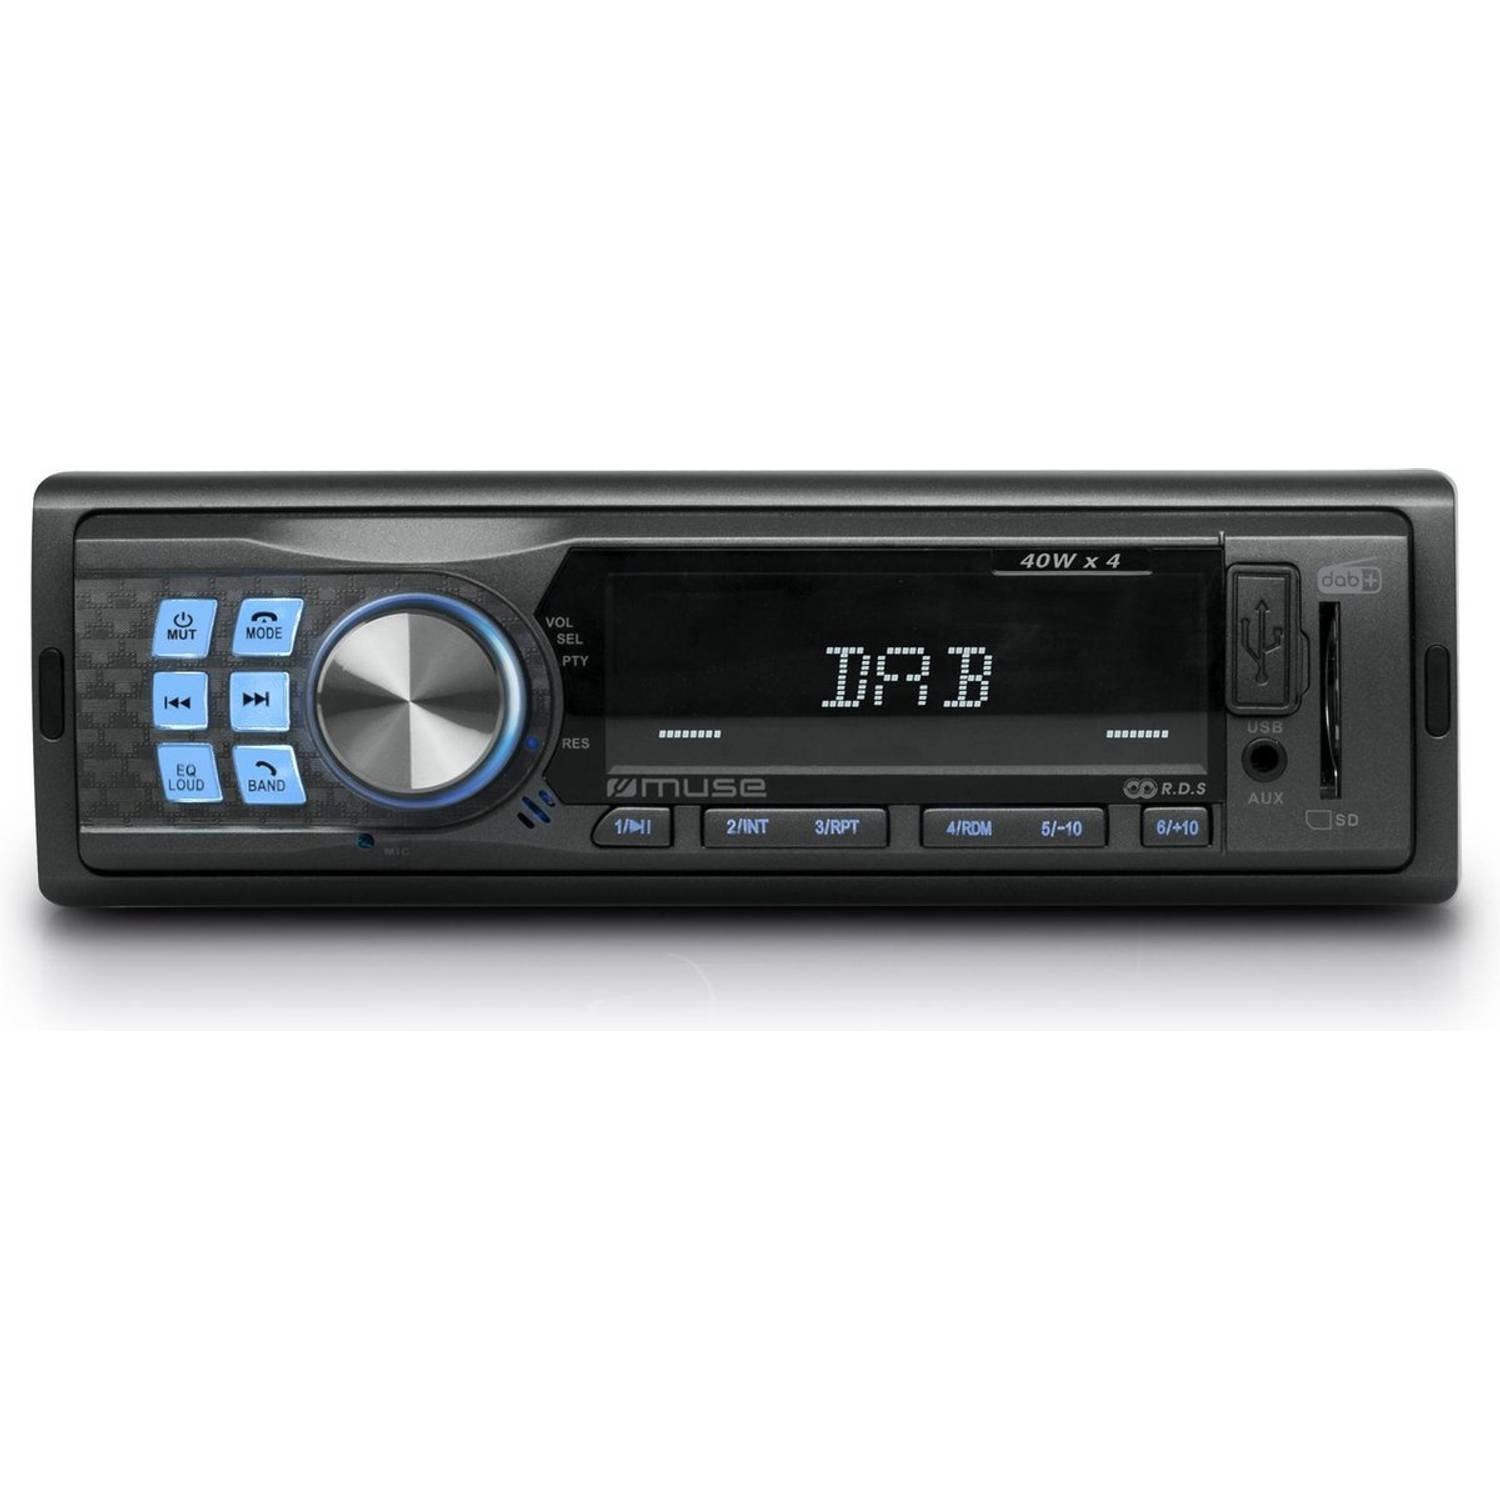 Van God heilig Laan Muse M-199DAB Autoradio met bluetooth, USB & SD | Blokker